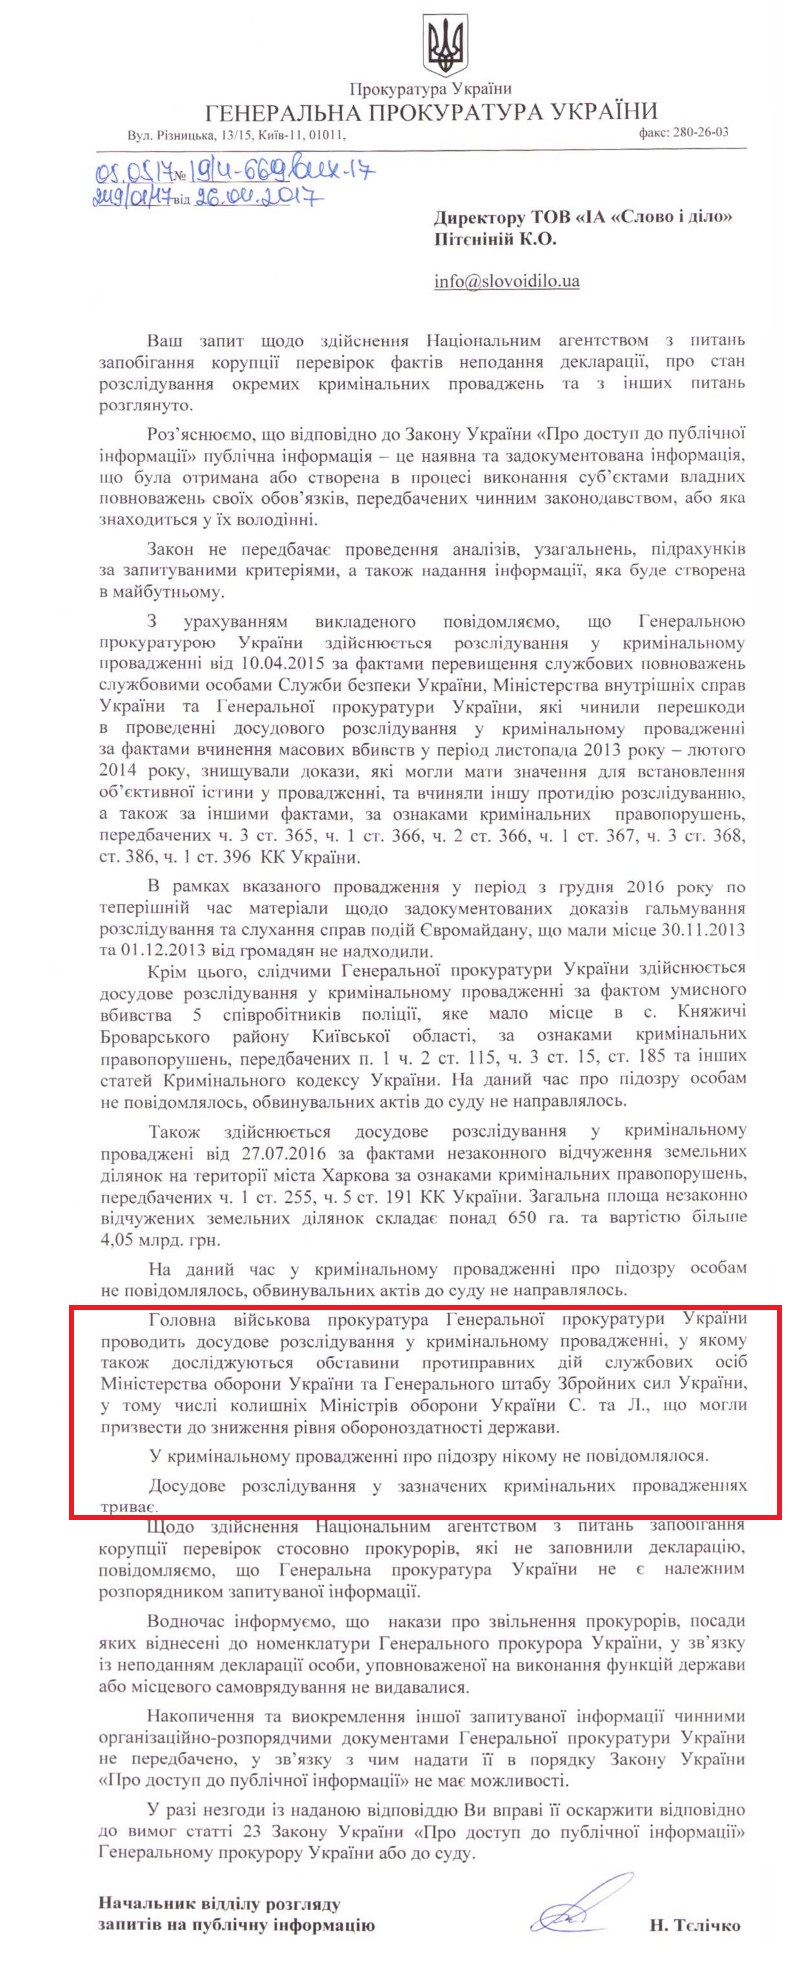 Лист начальника відділу розгляду запитів на публічну інформацію Генеральної прокуратури України Наталії Тєлічко від 5 травня 2017 року